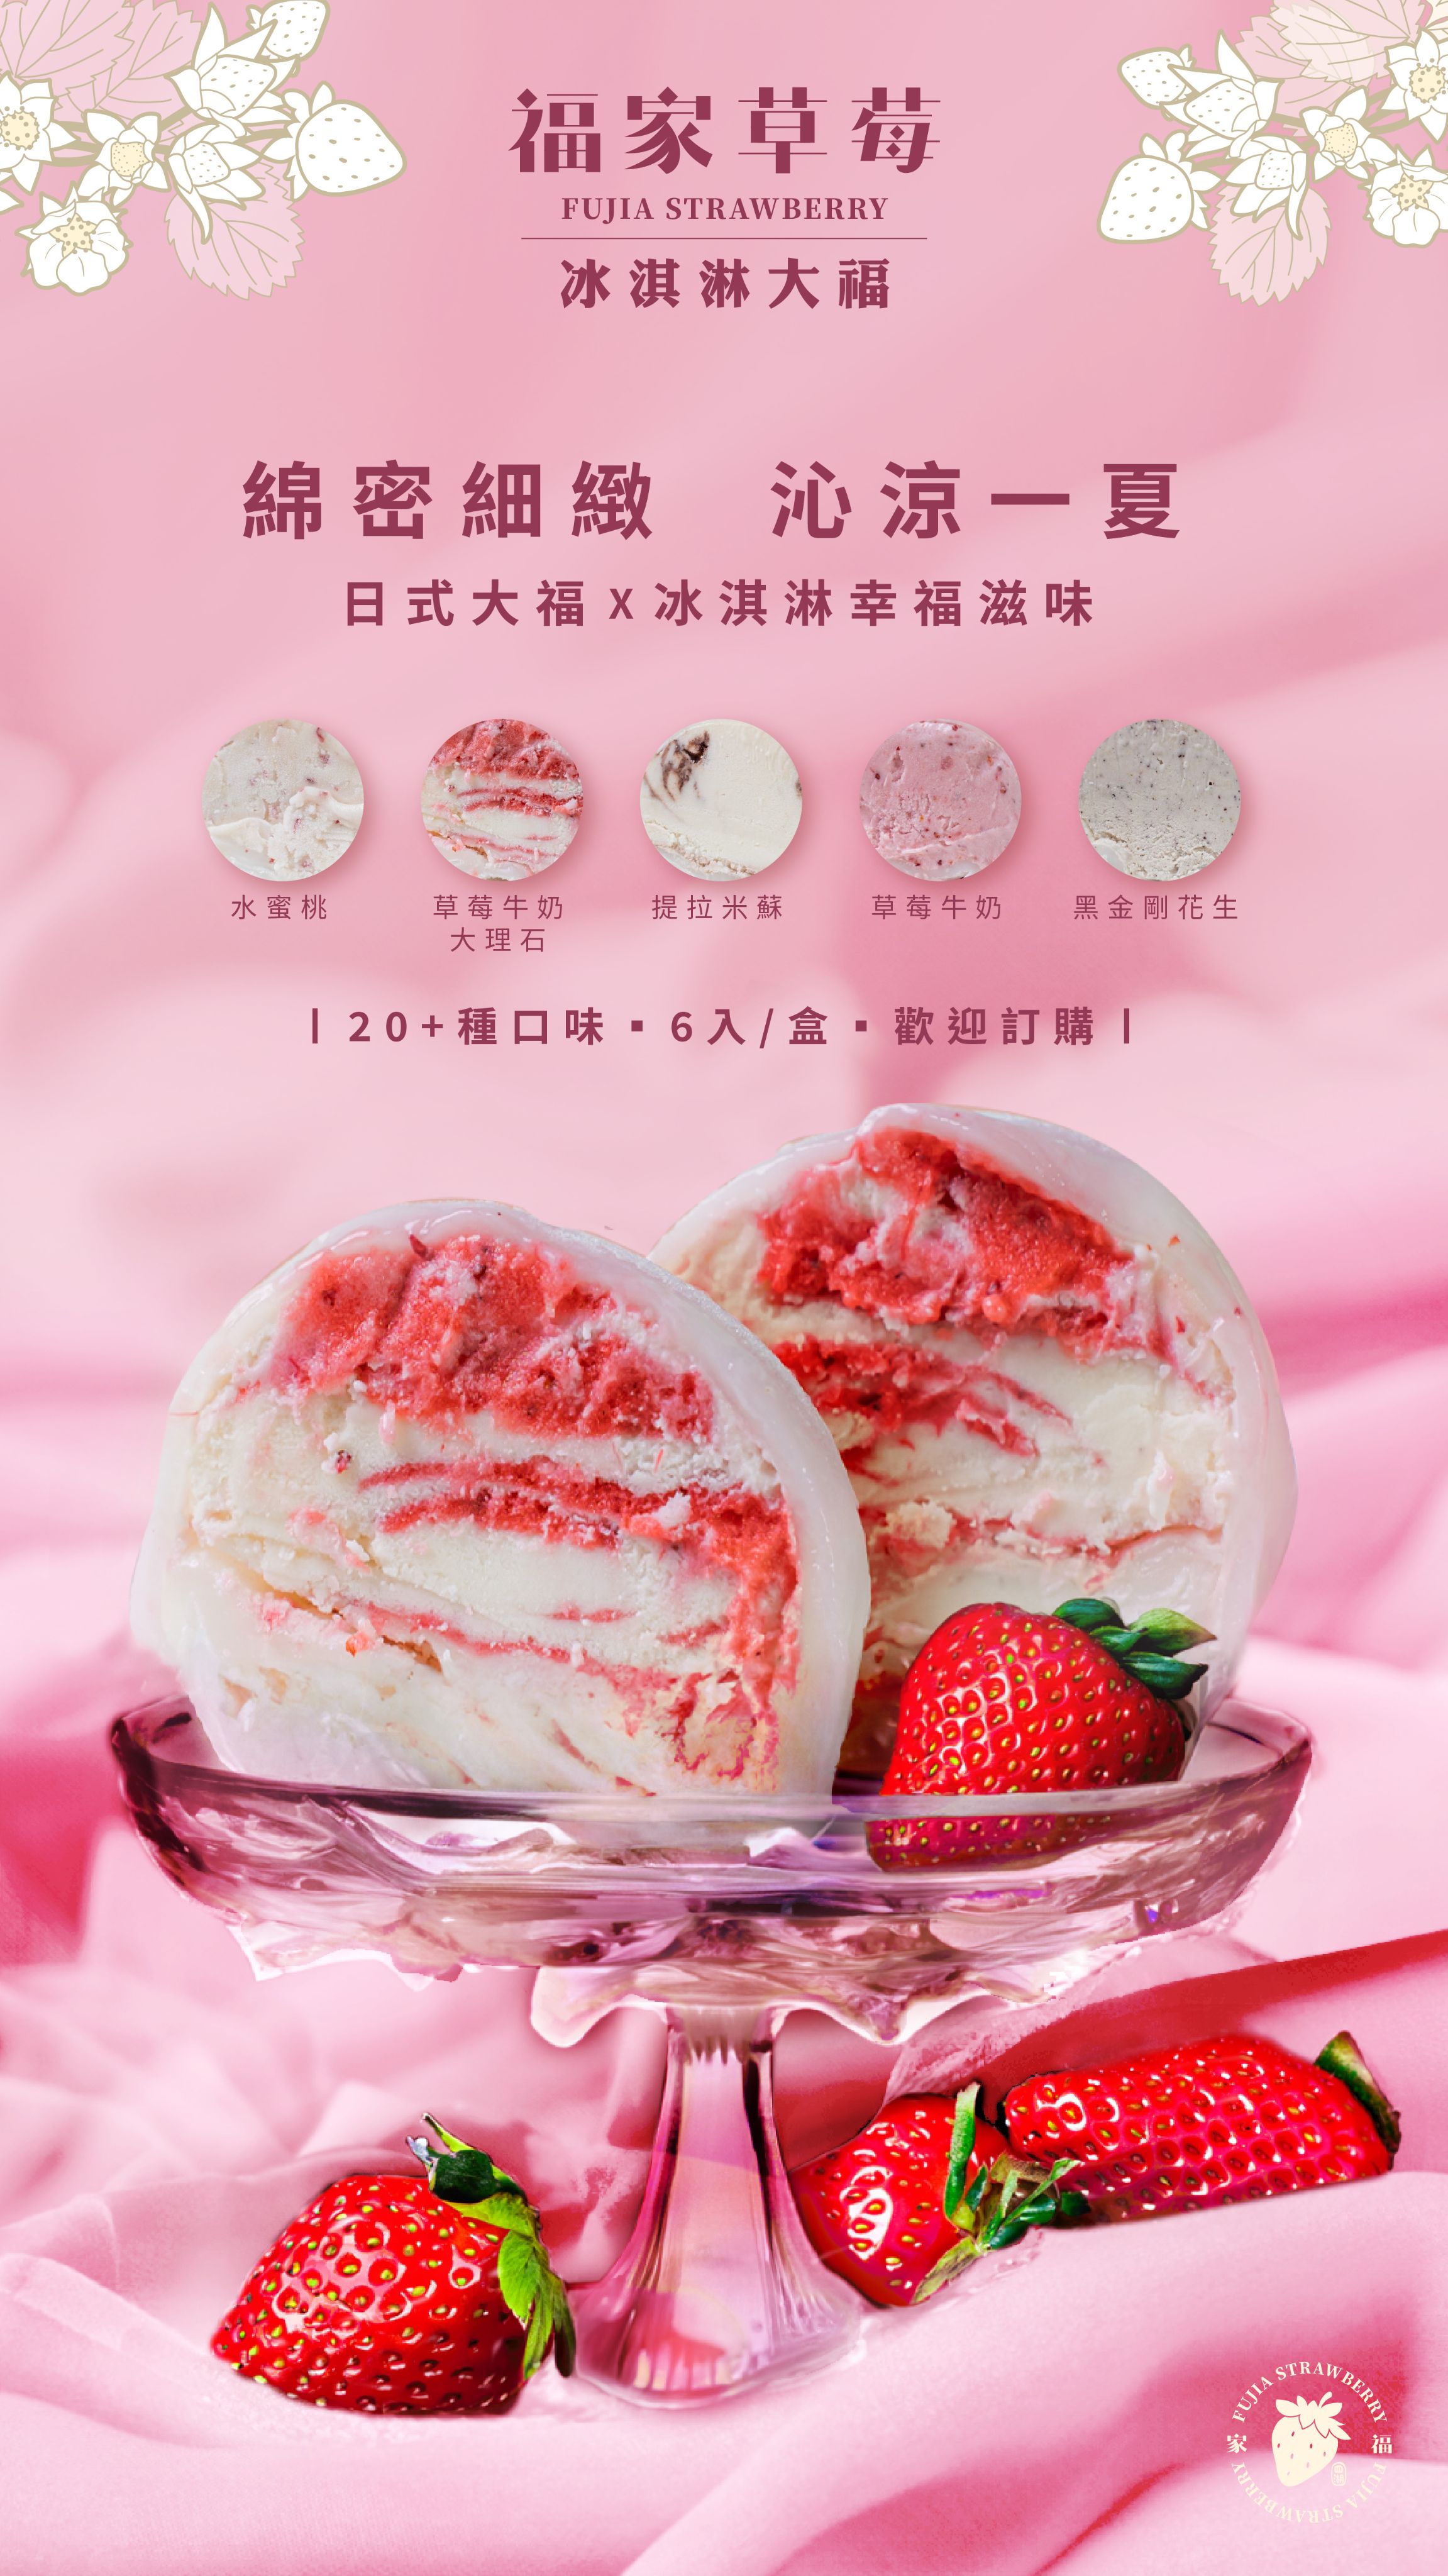 （2）【粉絲最愛組合】內容物：草莓牛奶*2、愛文芒果*2、金枕頭榴槤*2